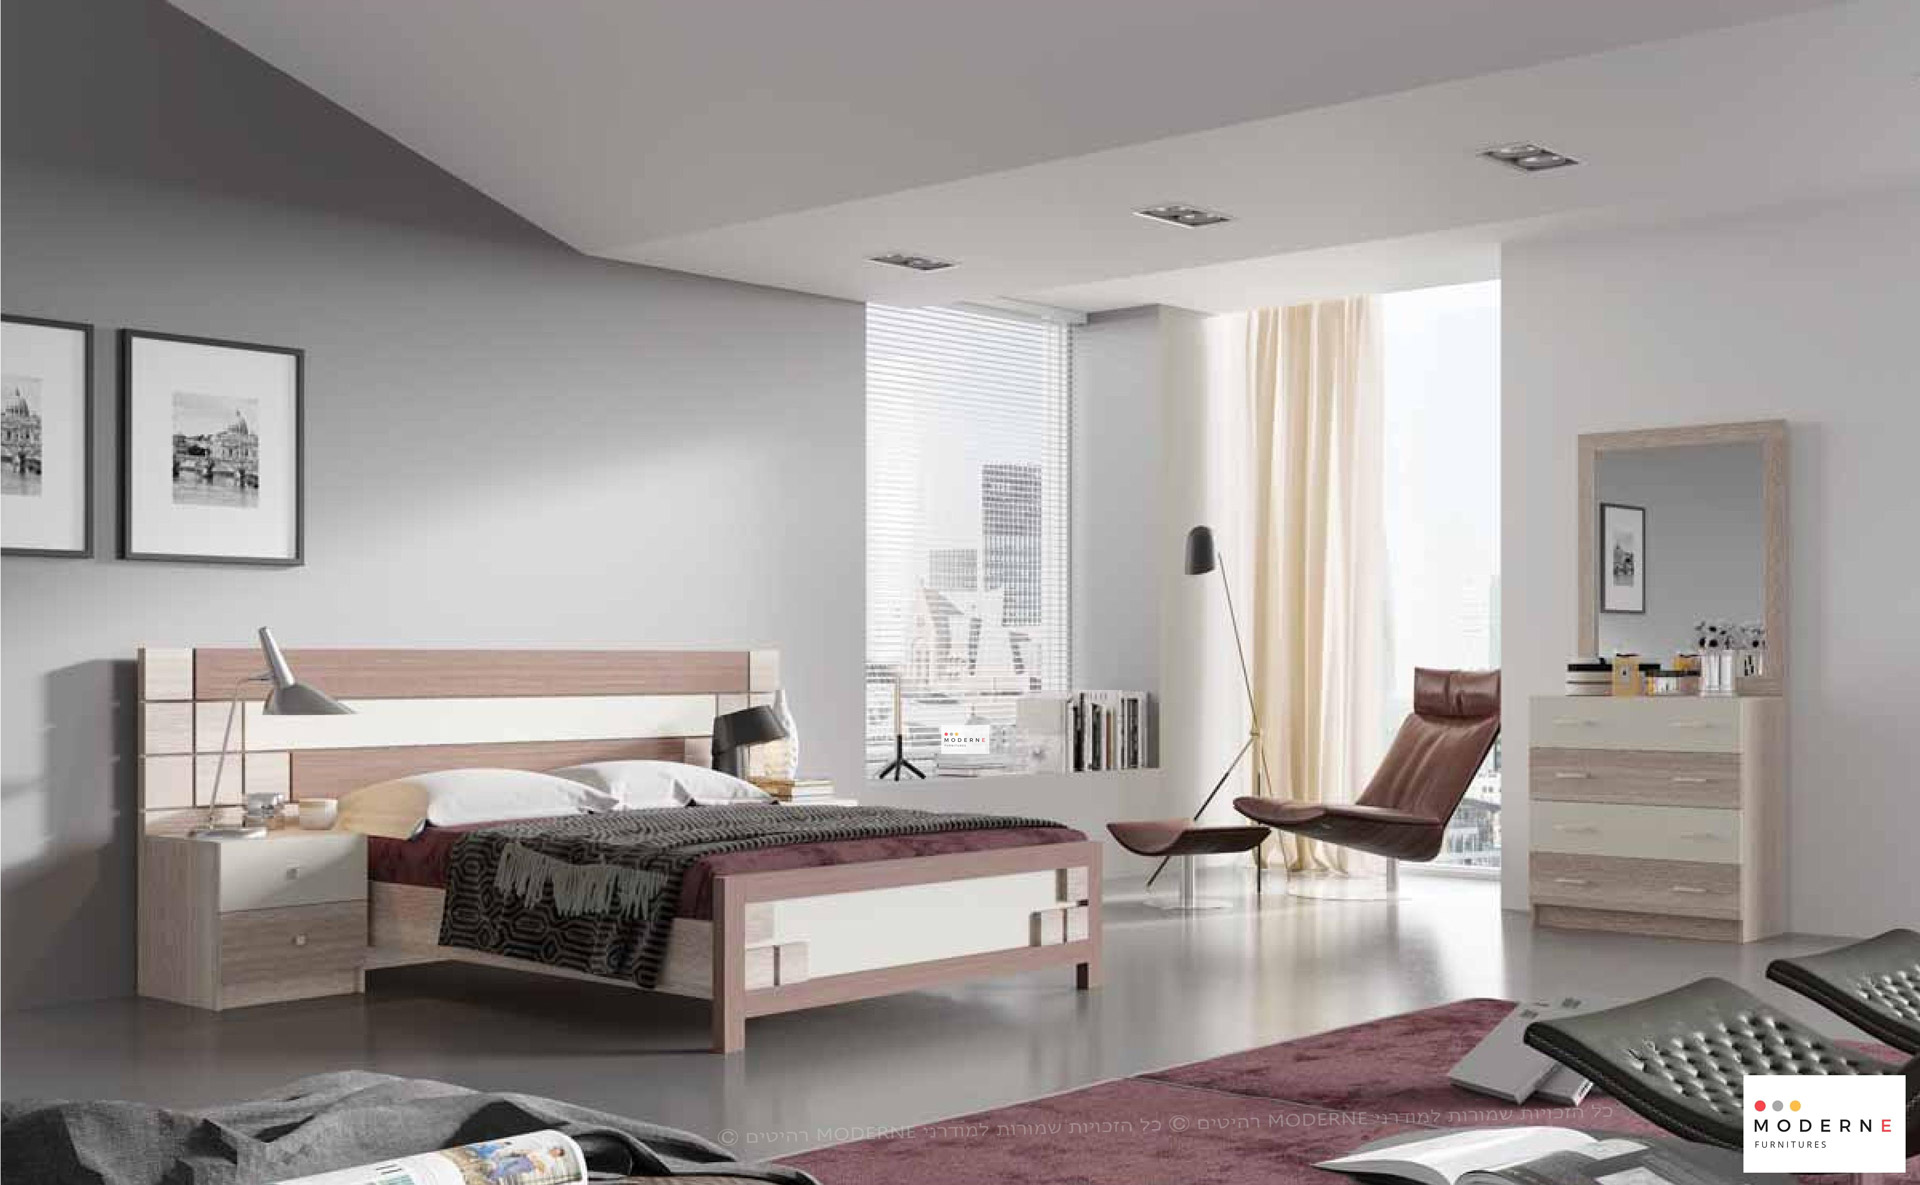 חדר שינה קומפלט דגם דניאל הכולל מיטה זוגית ,2 שידות ,קומודה ומראה ,בצבע חום בשילוב שמנת ,נמצא באתר מודרני moderne.co.il